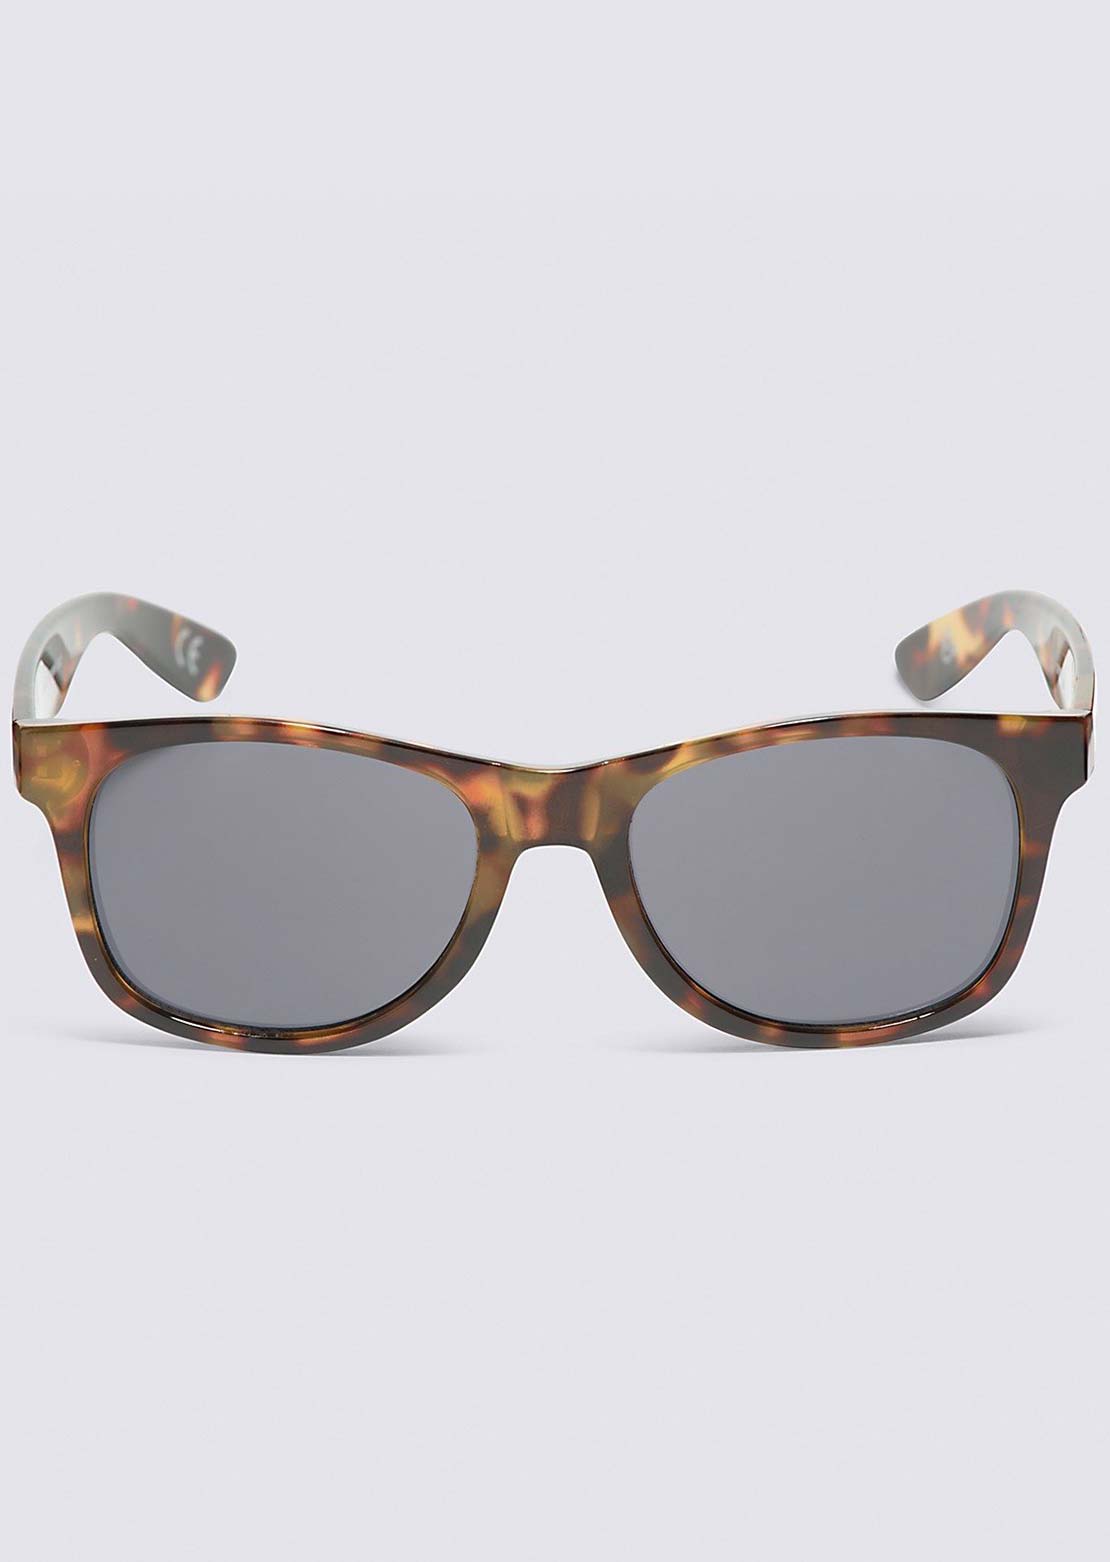 Vans Spicoli 4 Shades Sunglasses Cheetah tortoise